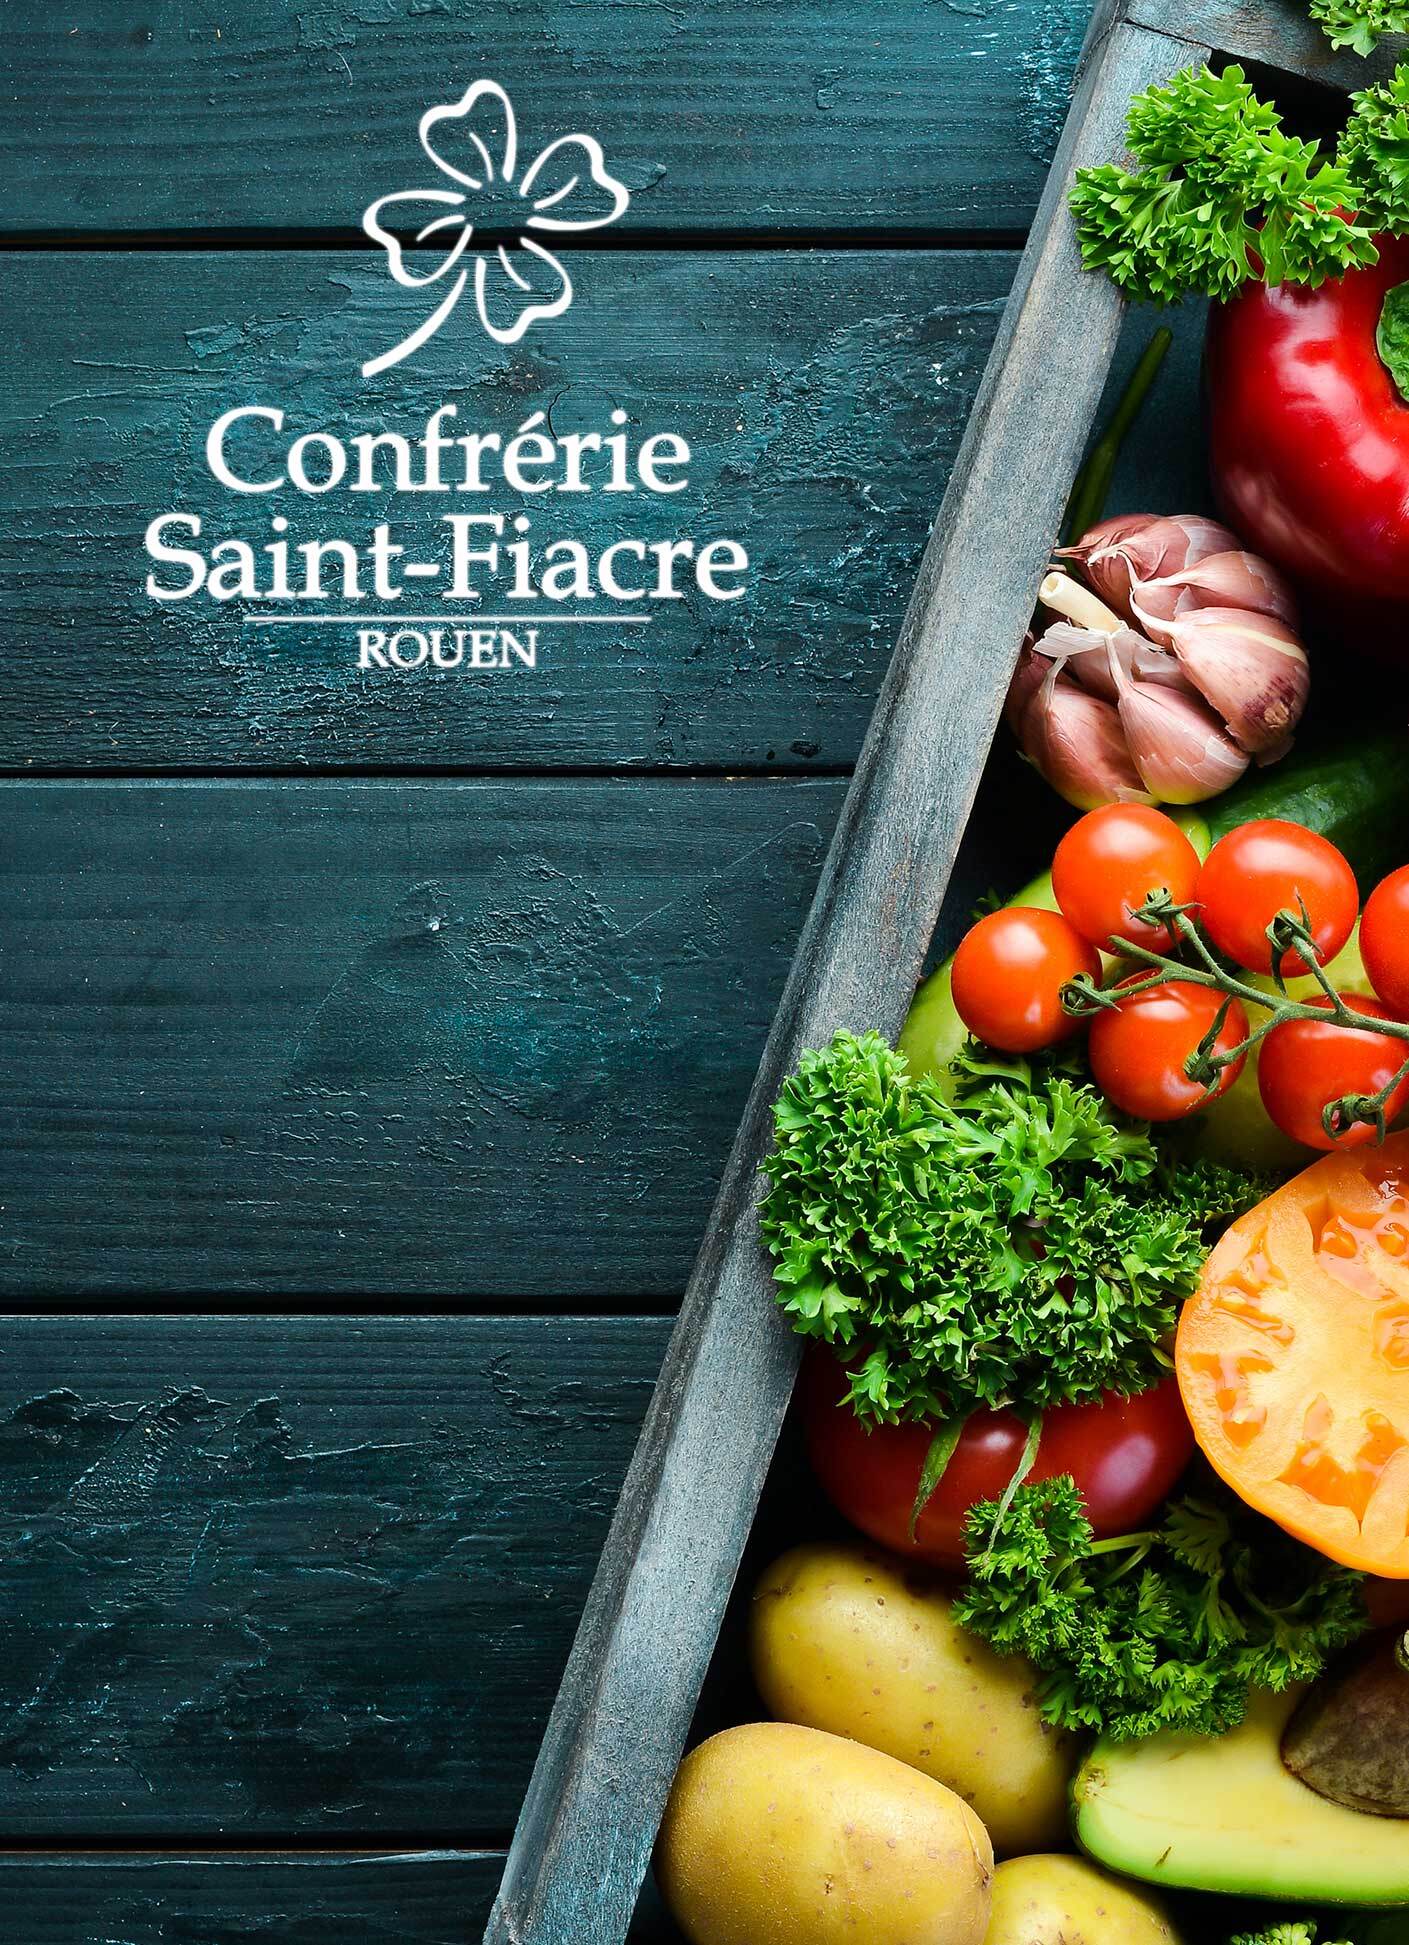 Access Base Sud a développé le site internet de la Confrérie Saint-Fiacre, une association rouanaise qui a pour but de promouvoir auprès d’un large public, la connaissance de l’art du jardinage, de l’horticulture, du maraîchage, de la silviculture…